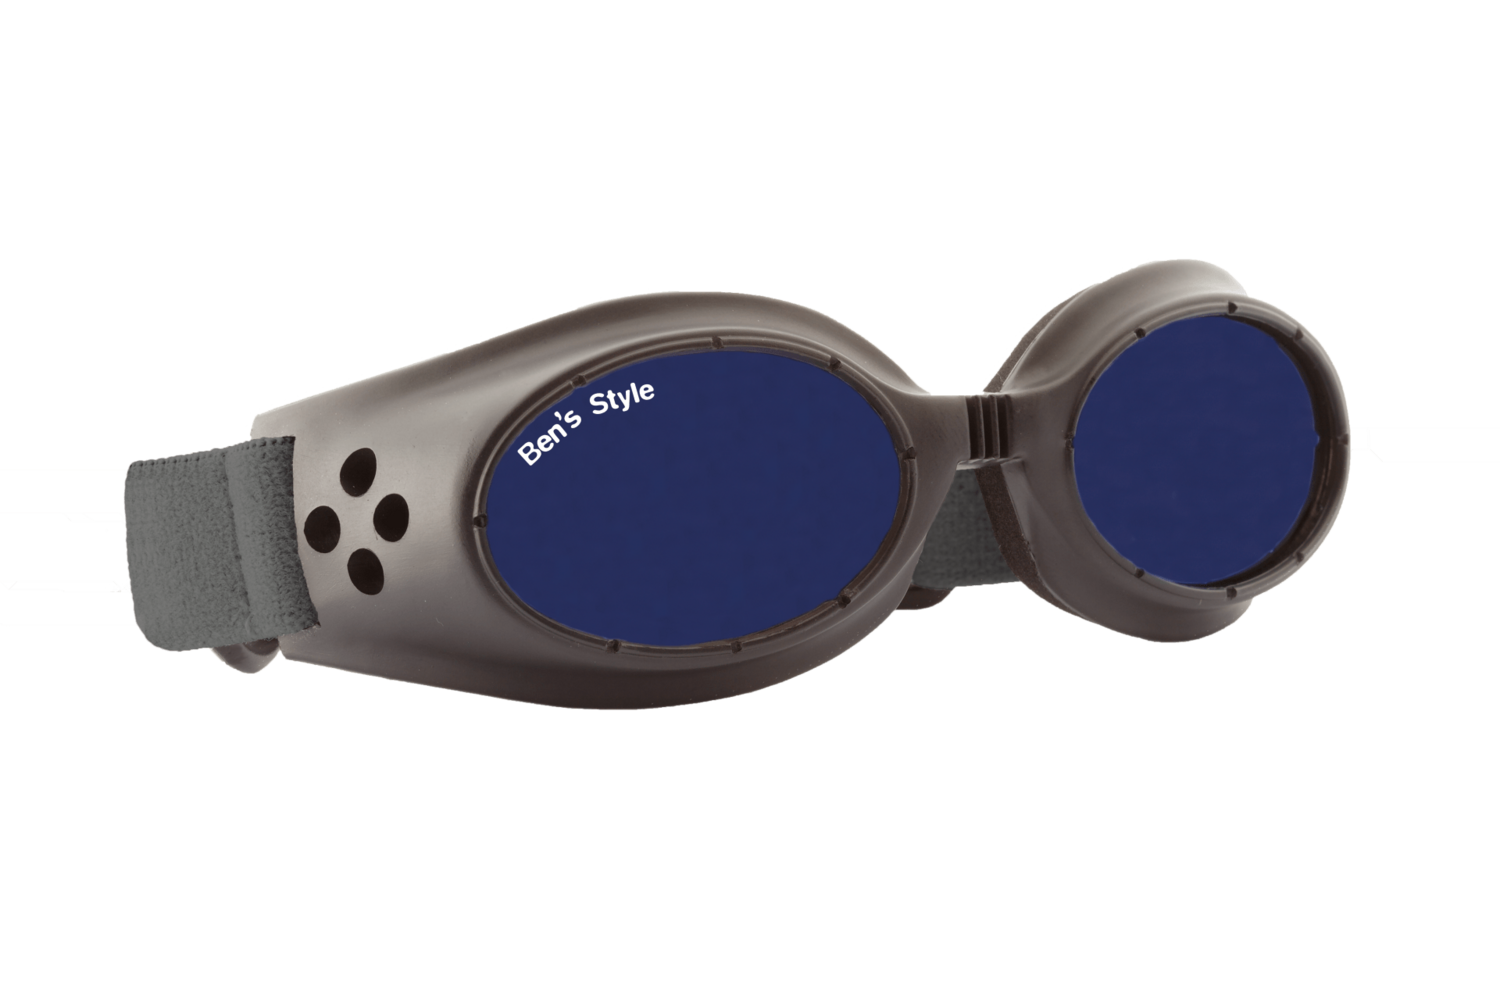 Cool II S -
Hundeschutzbrille Größe S
- Fassung: Schwarz, Gläser: Blau
Größe/Gesamtgewicht: Länge: 13,5 cm, Breite: 4 cm / 40 g